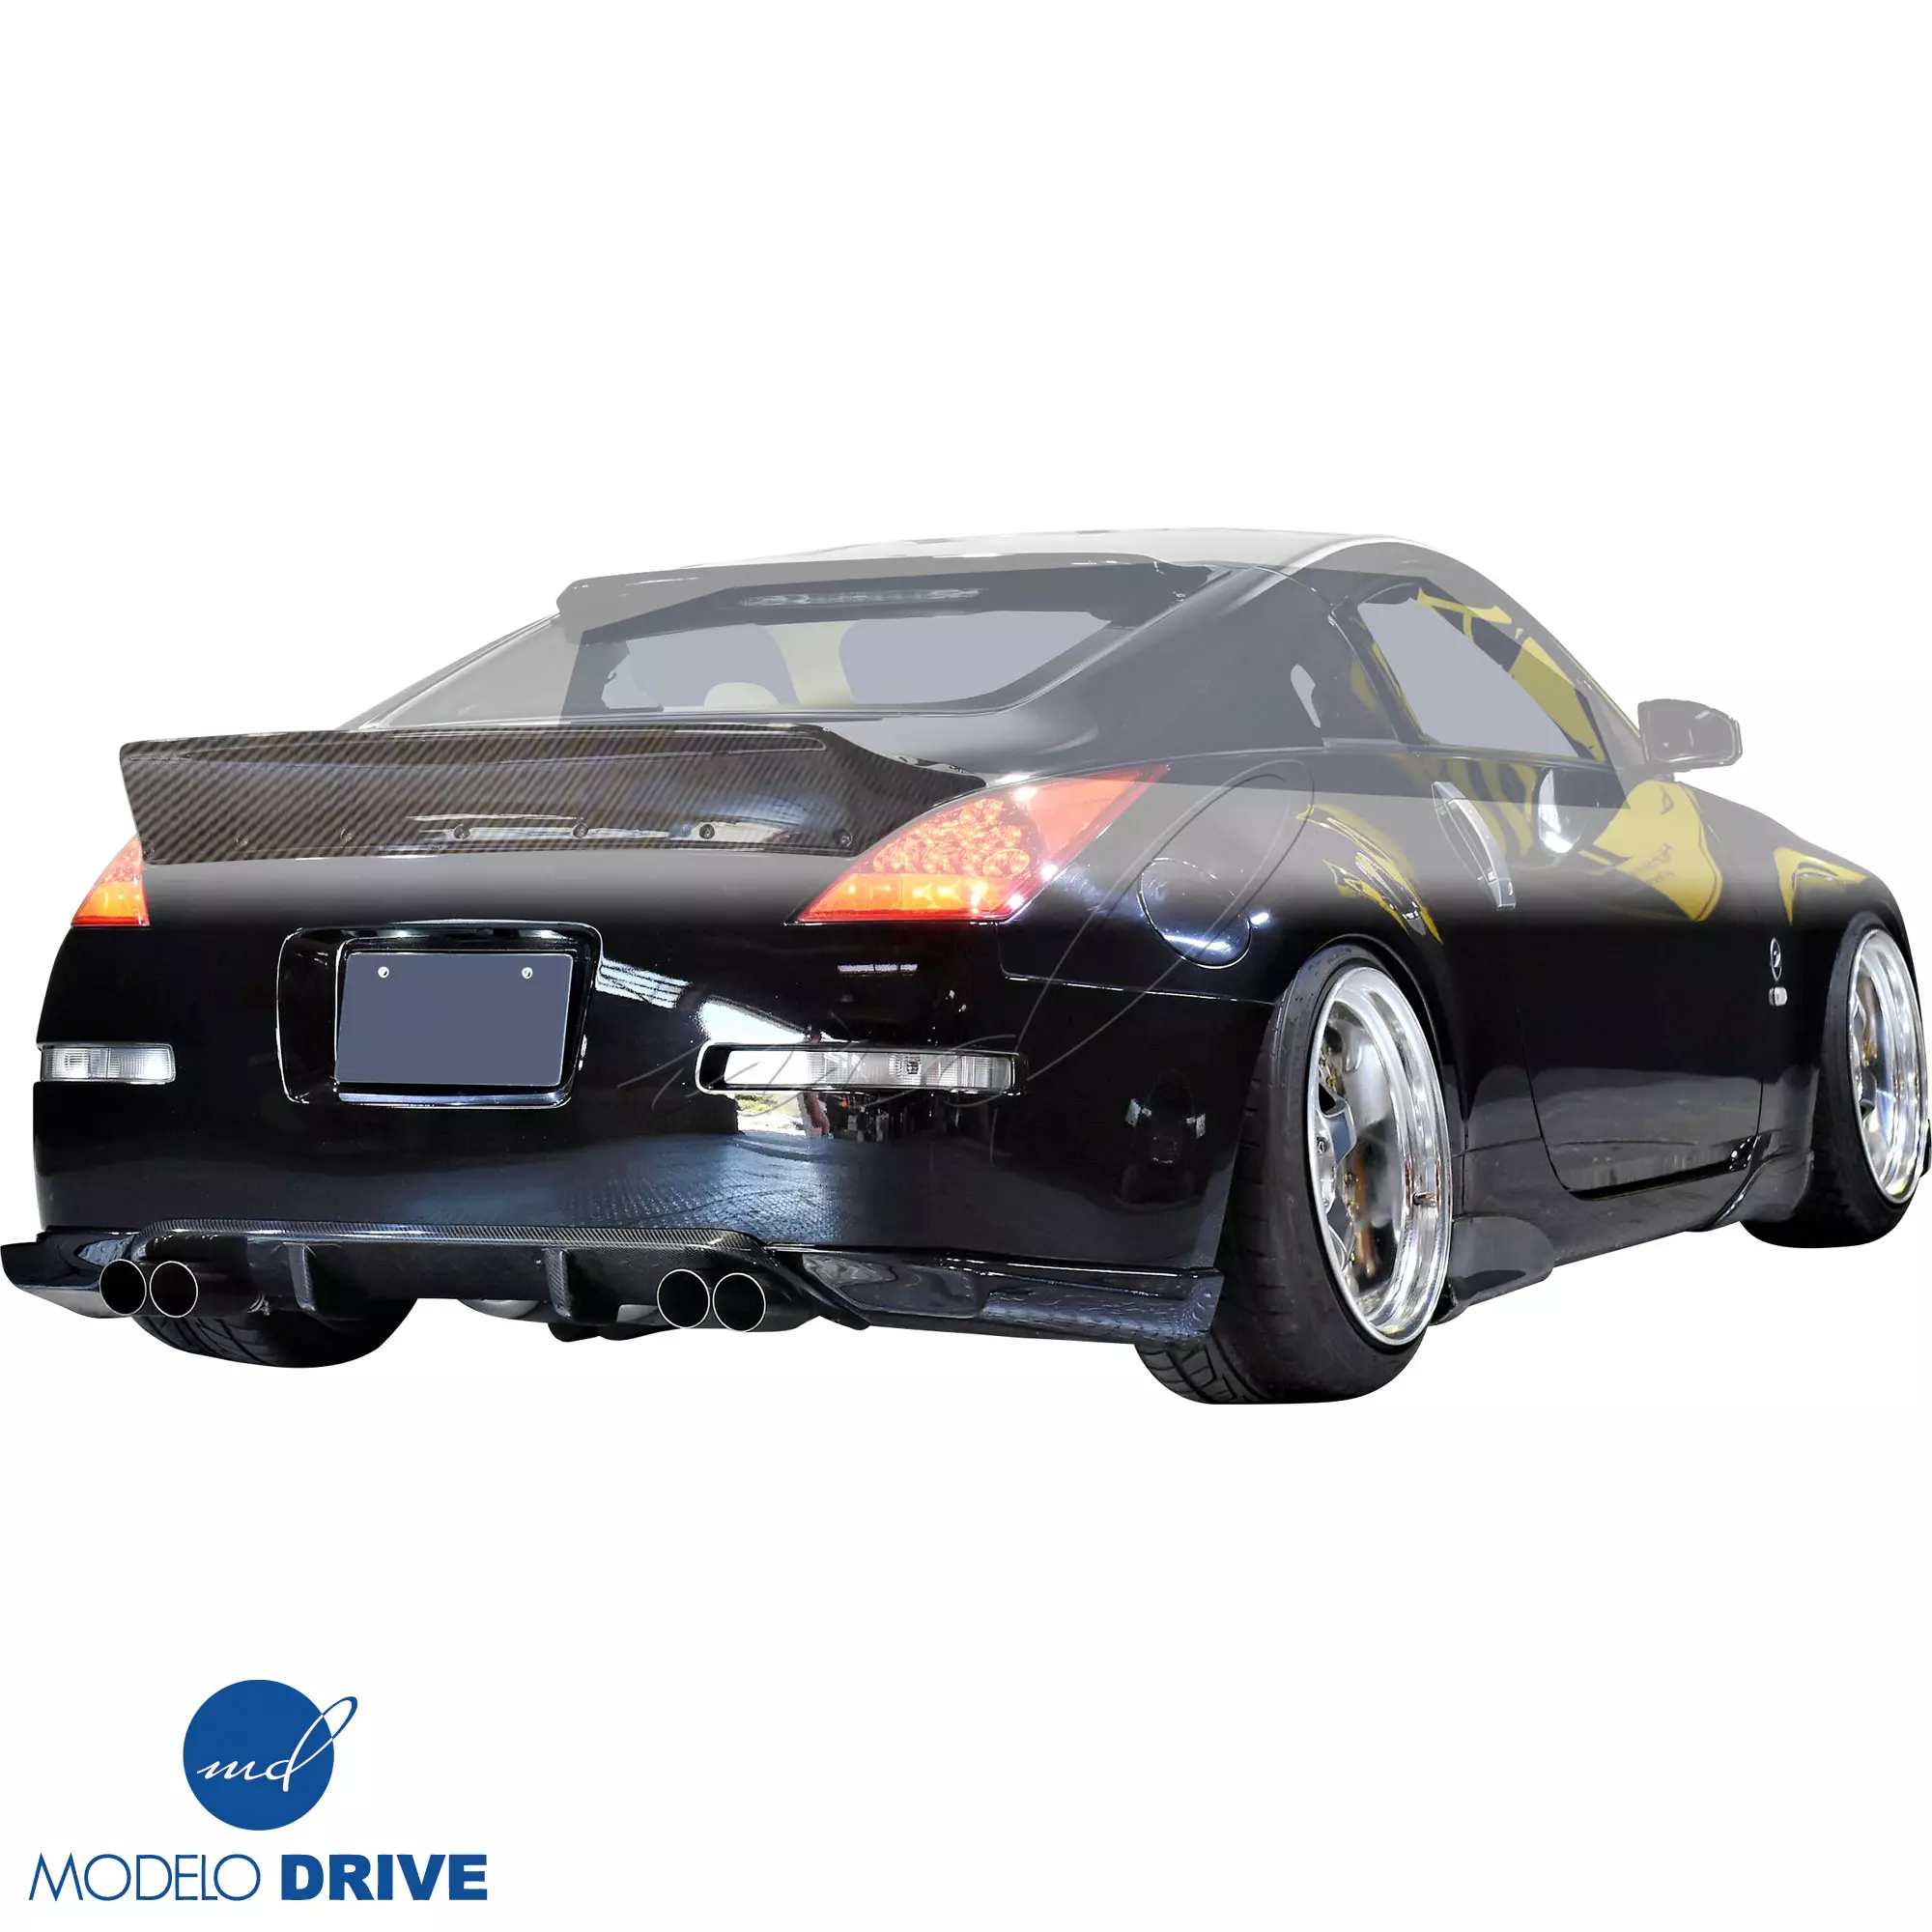 ModeloDrive Carbon Fiber TKYO Spoiler Wing > Nissan 350Z Z33 2003-2008 - Image 18